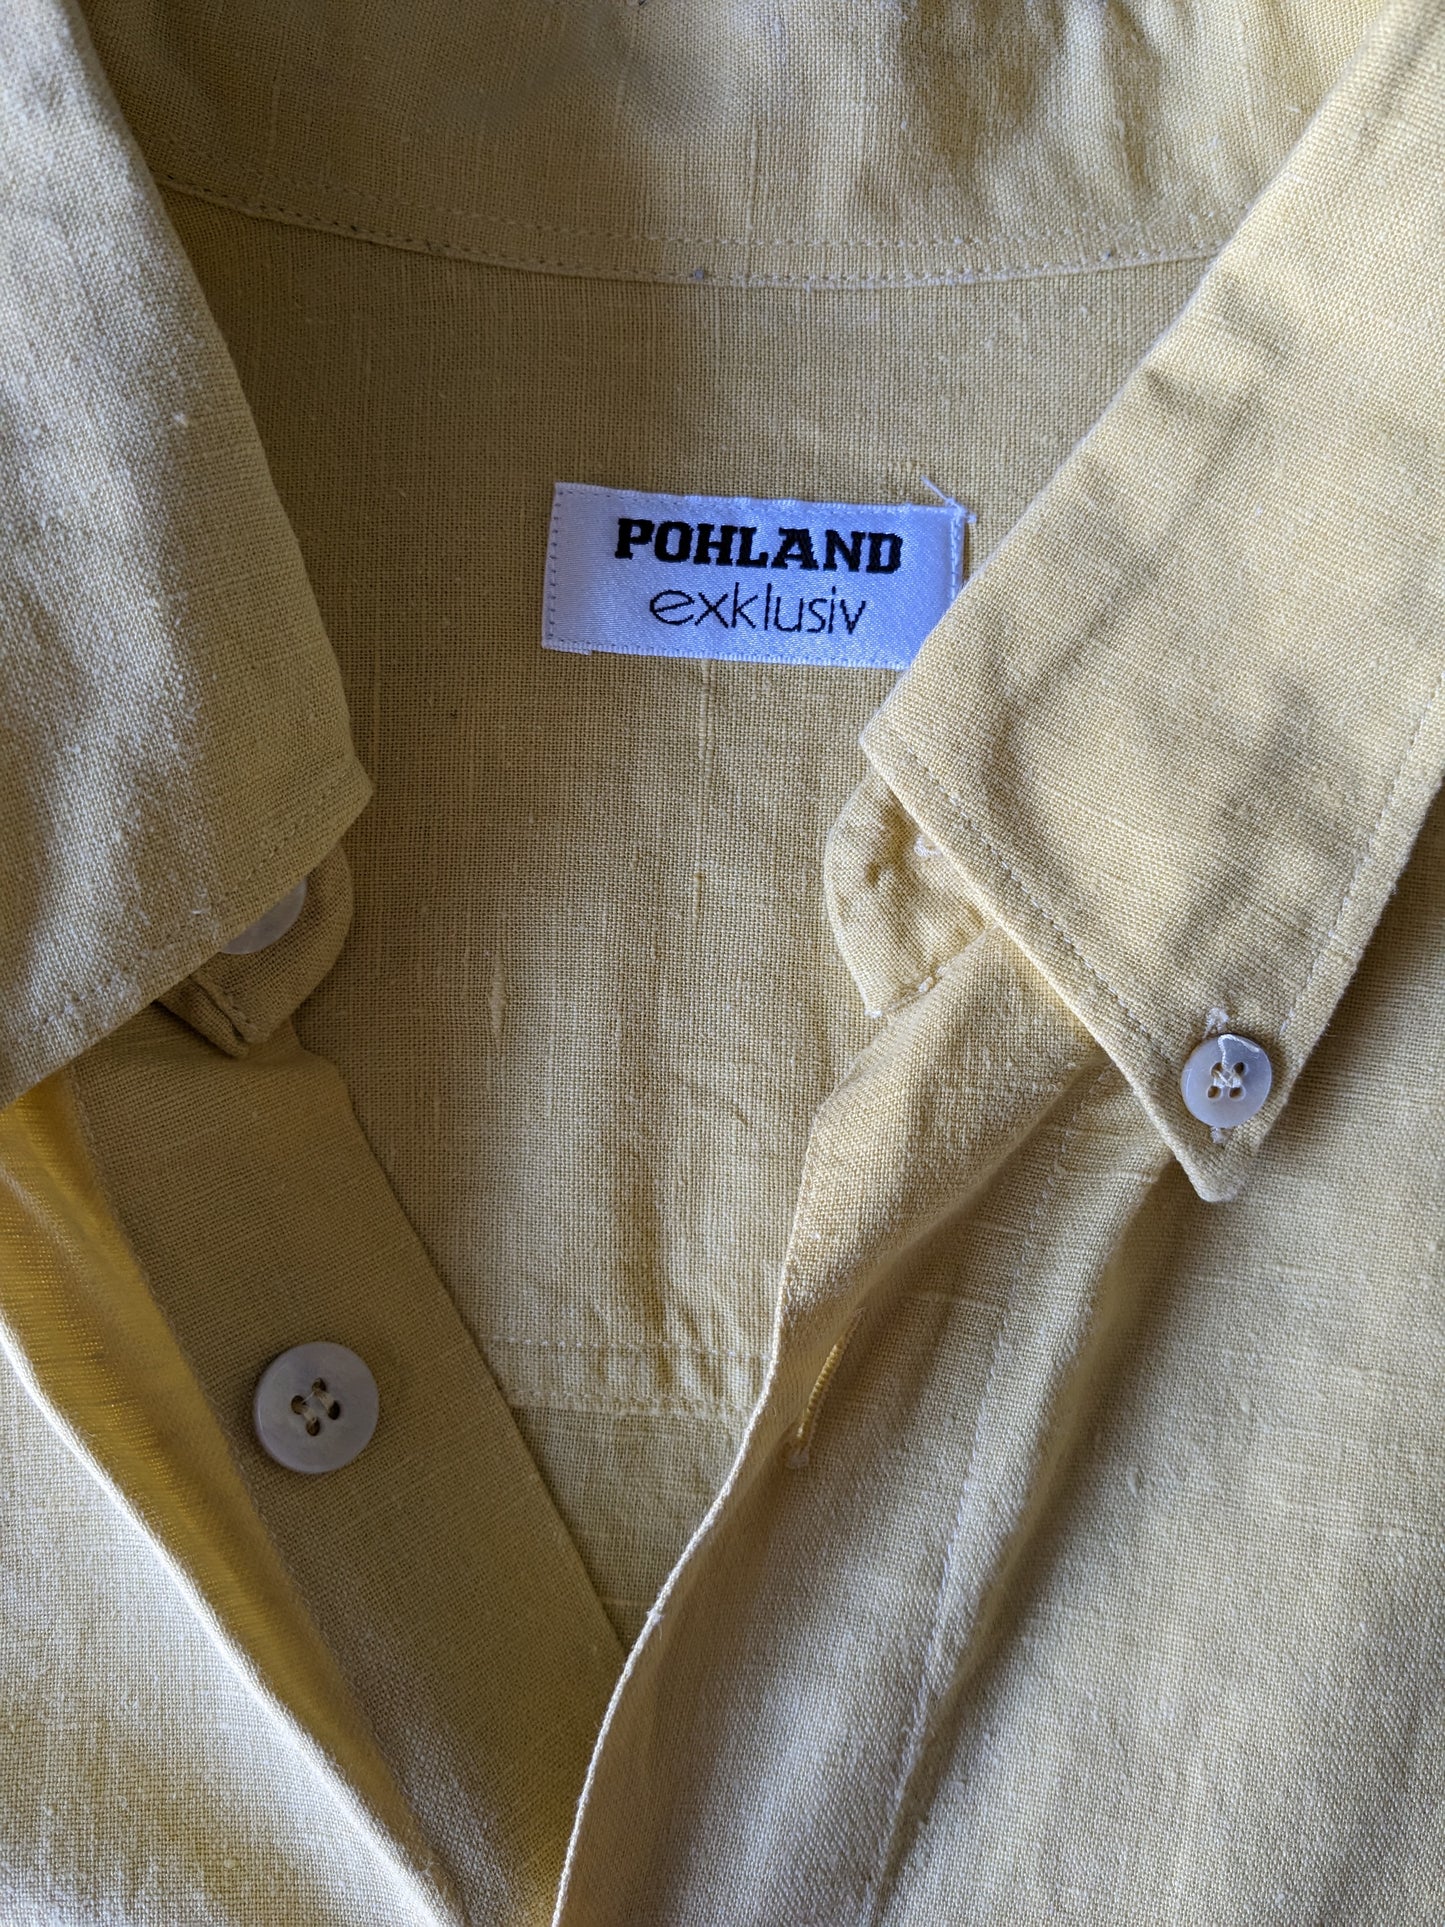 Vintage Pohland Exklusiv -Leinenhemd mit größeren Knöpfen. Gelb gefärbt. Größe 2xl / xxl.